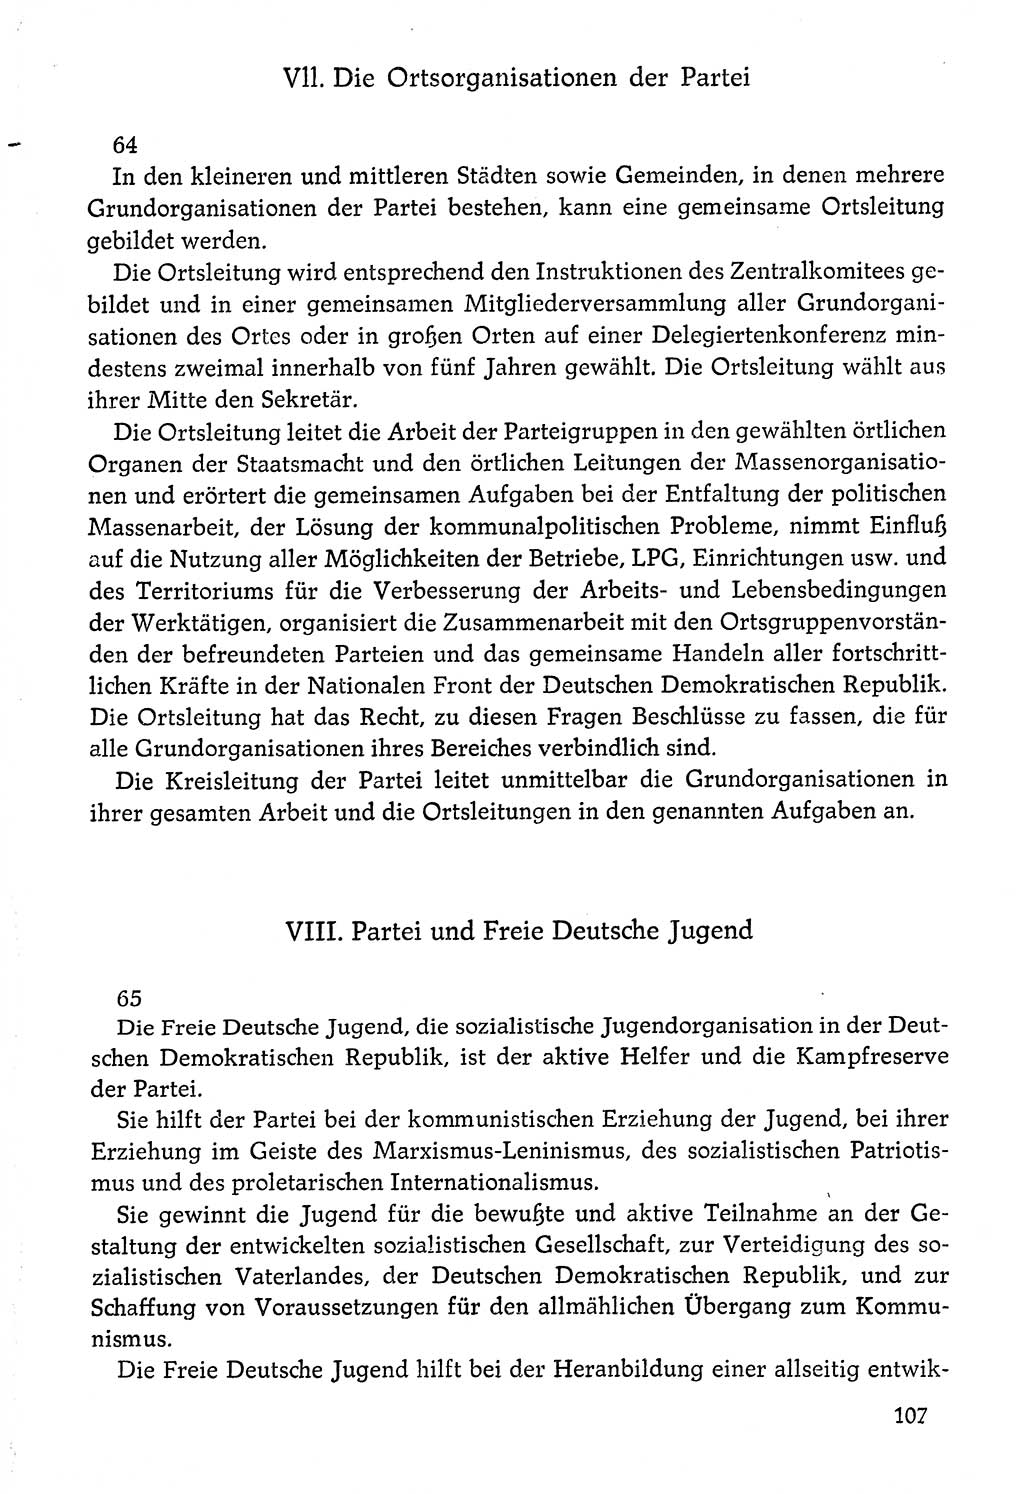 Dokumente der Sozialistischen Einheitspartei Deutschlands (SED) [Deutsche Demokratische Republik (DDR)] 1976-1977, Seite 107 (Dok. SED DDR 1976-1977, S. 107)